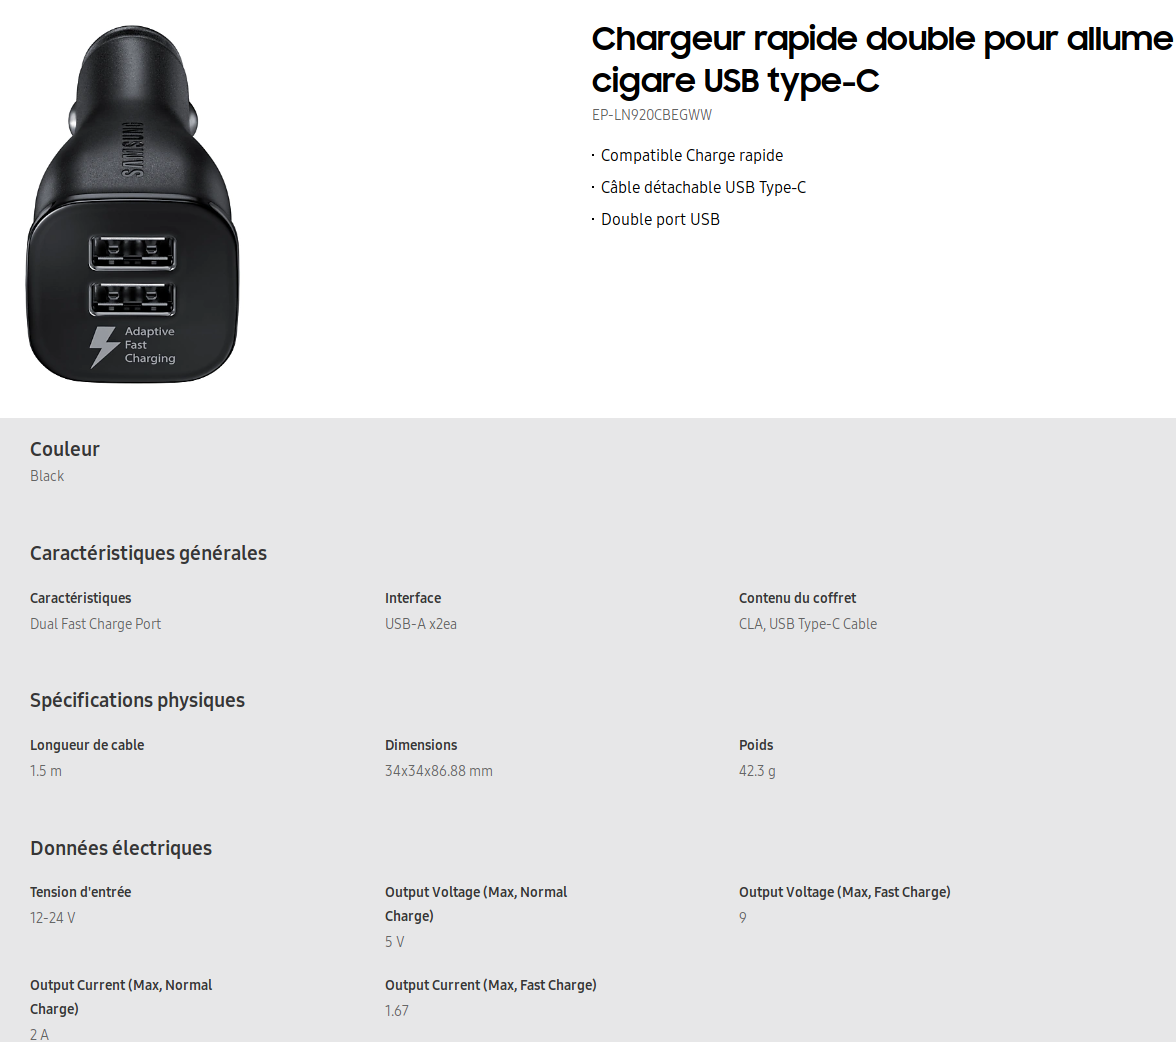 Acheter Chargeur de Voiture Samsung - Double à Chargement Rapide (type C) Maroc